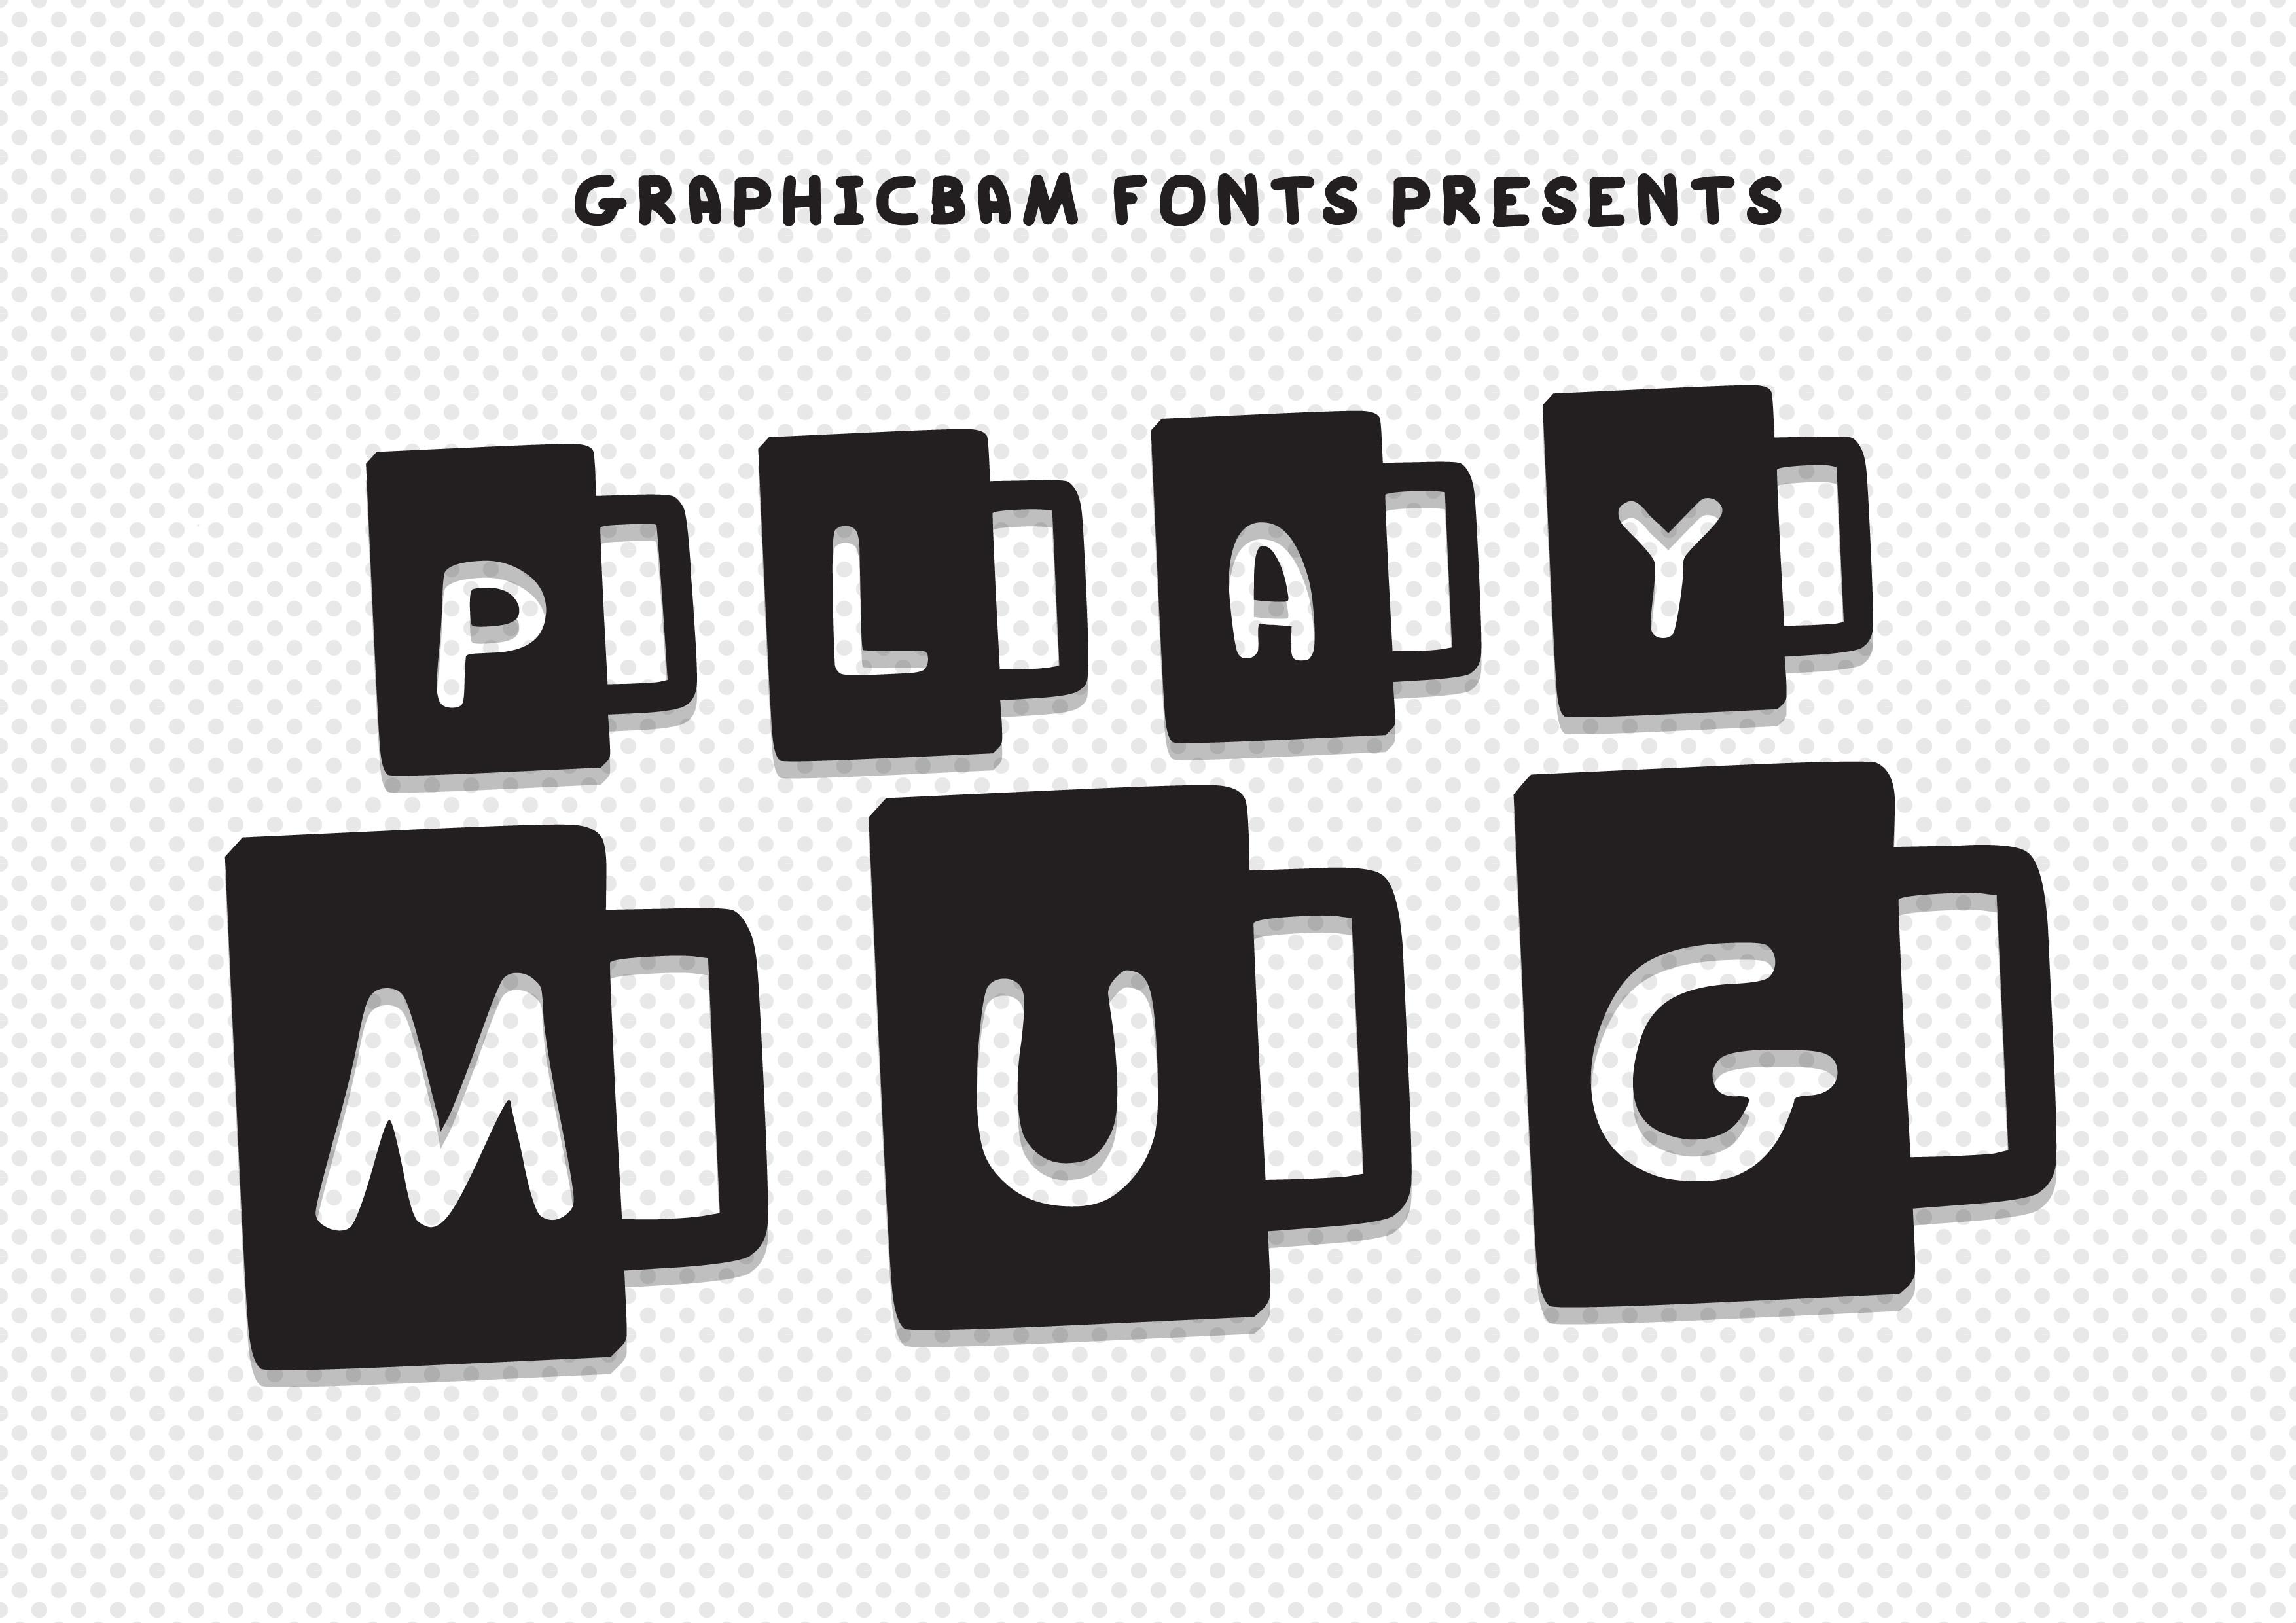 Play Mug Font